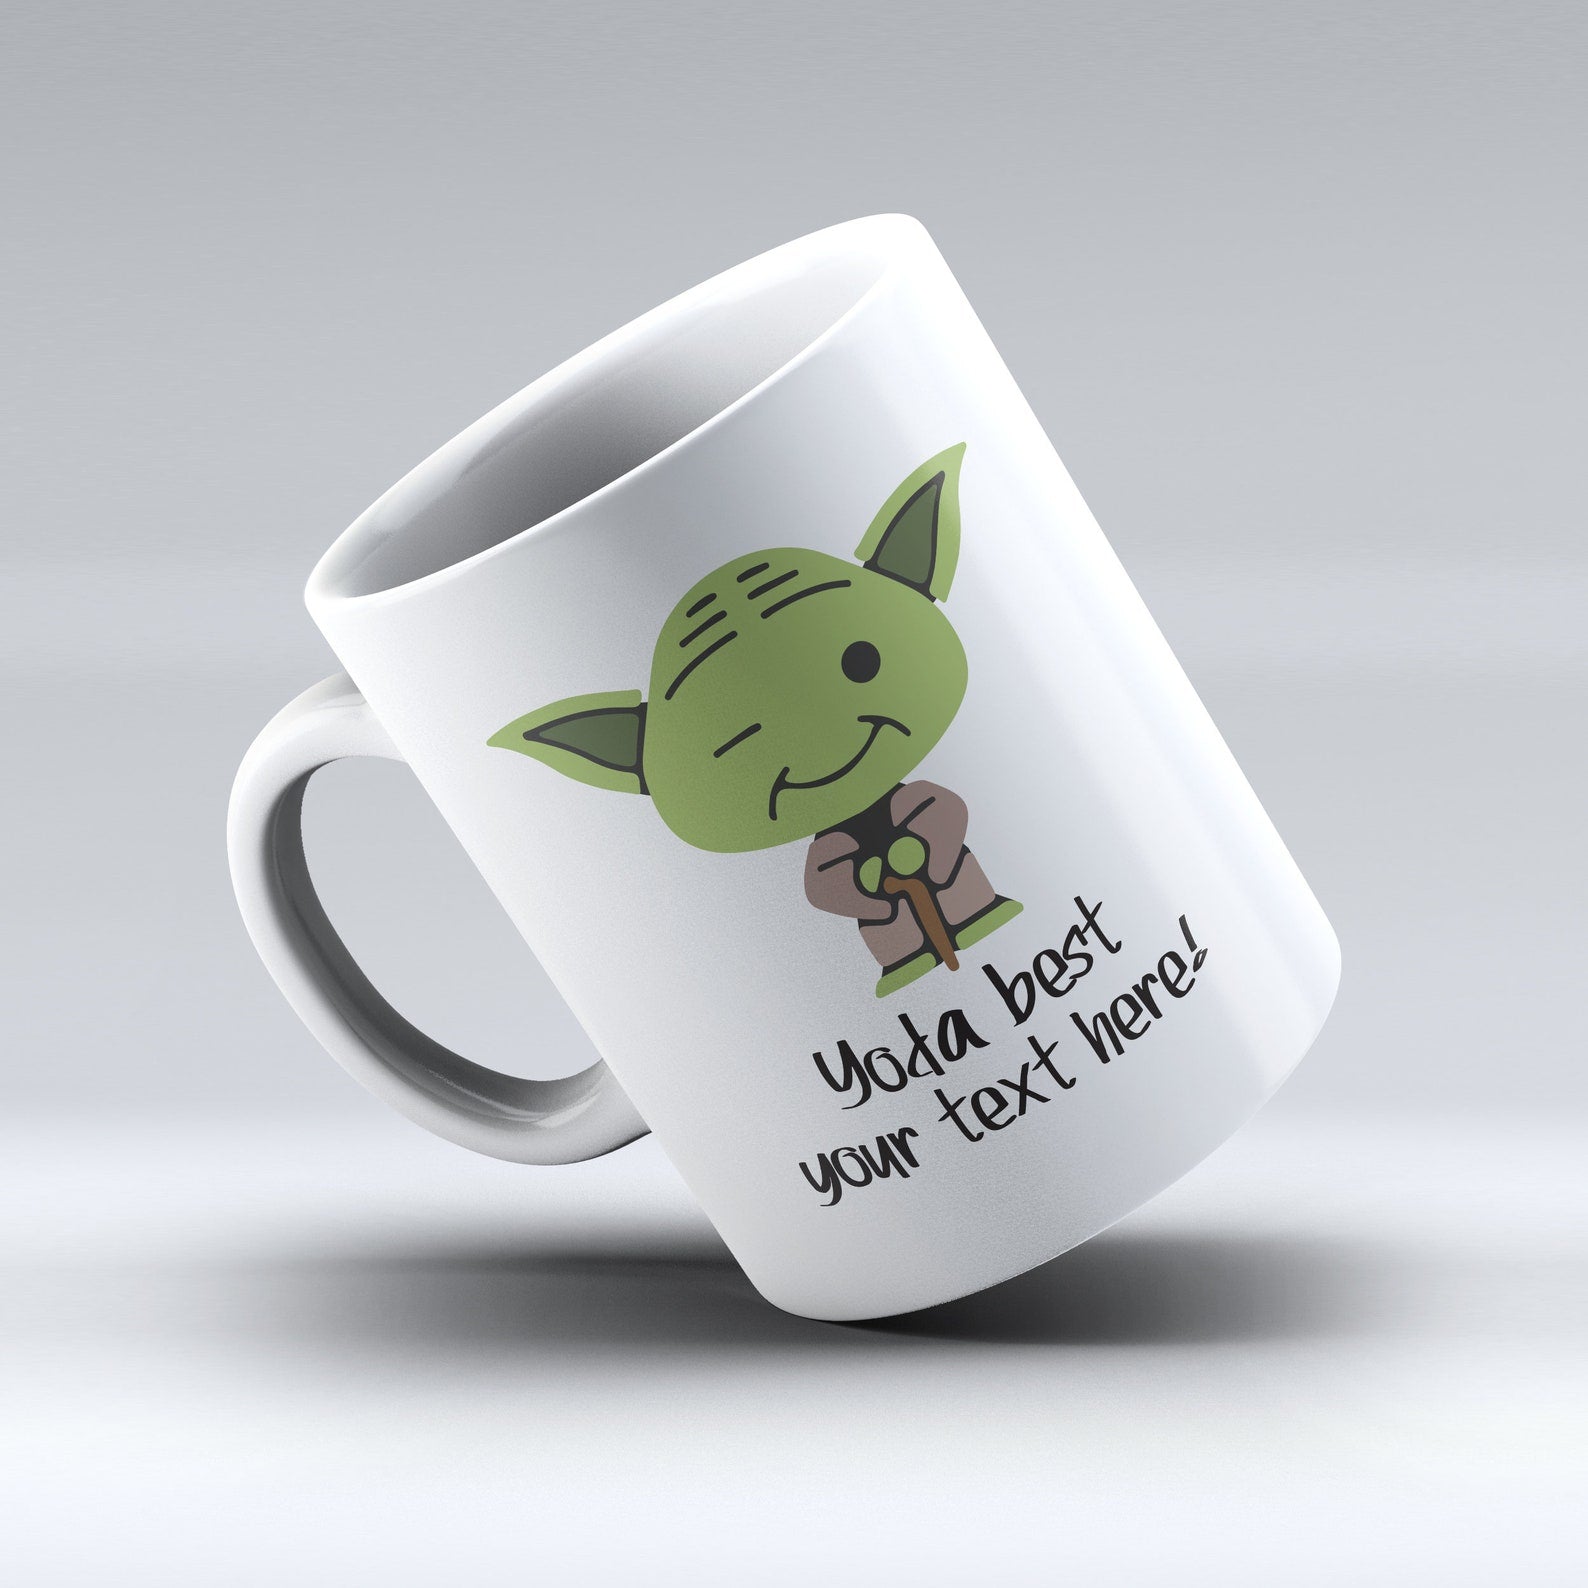 Yoda - Personalized Mug (Set of 5 Piece)